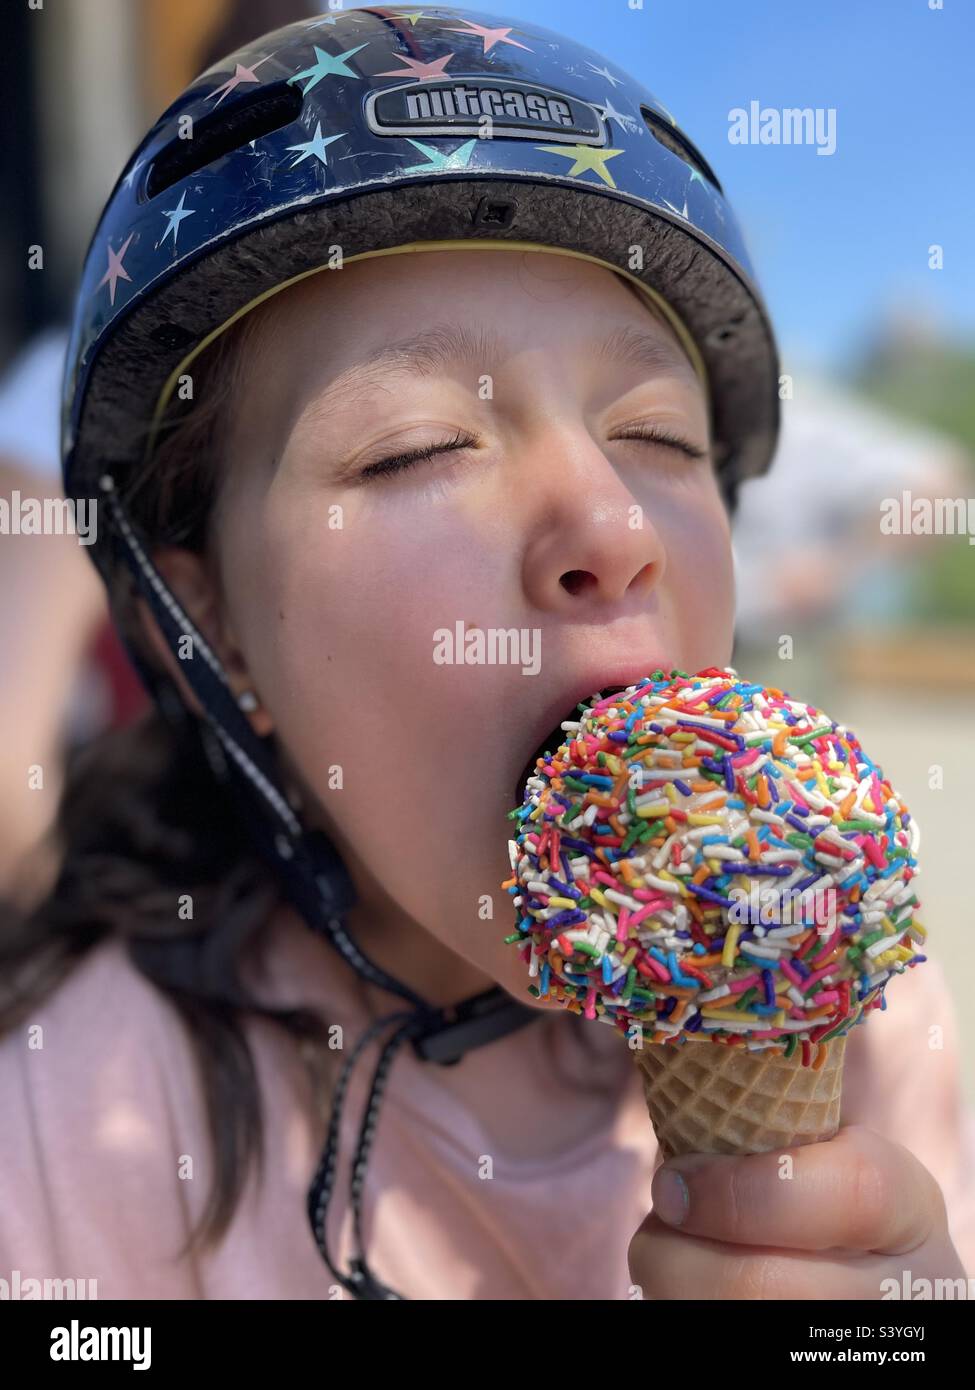 Das kleine Mädchen trägt einen Fahrradhelm und genießt einen Eiskegel, der mit bunten Prise bedeckt ist. Stockfoto